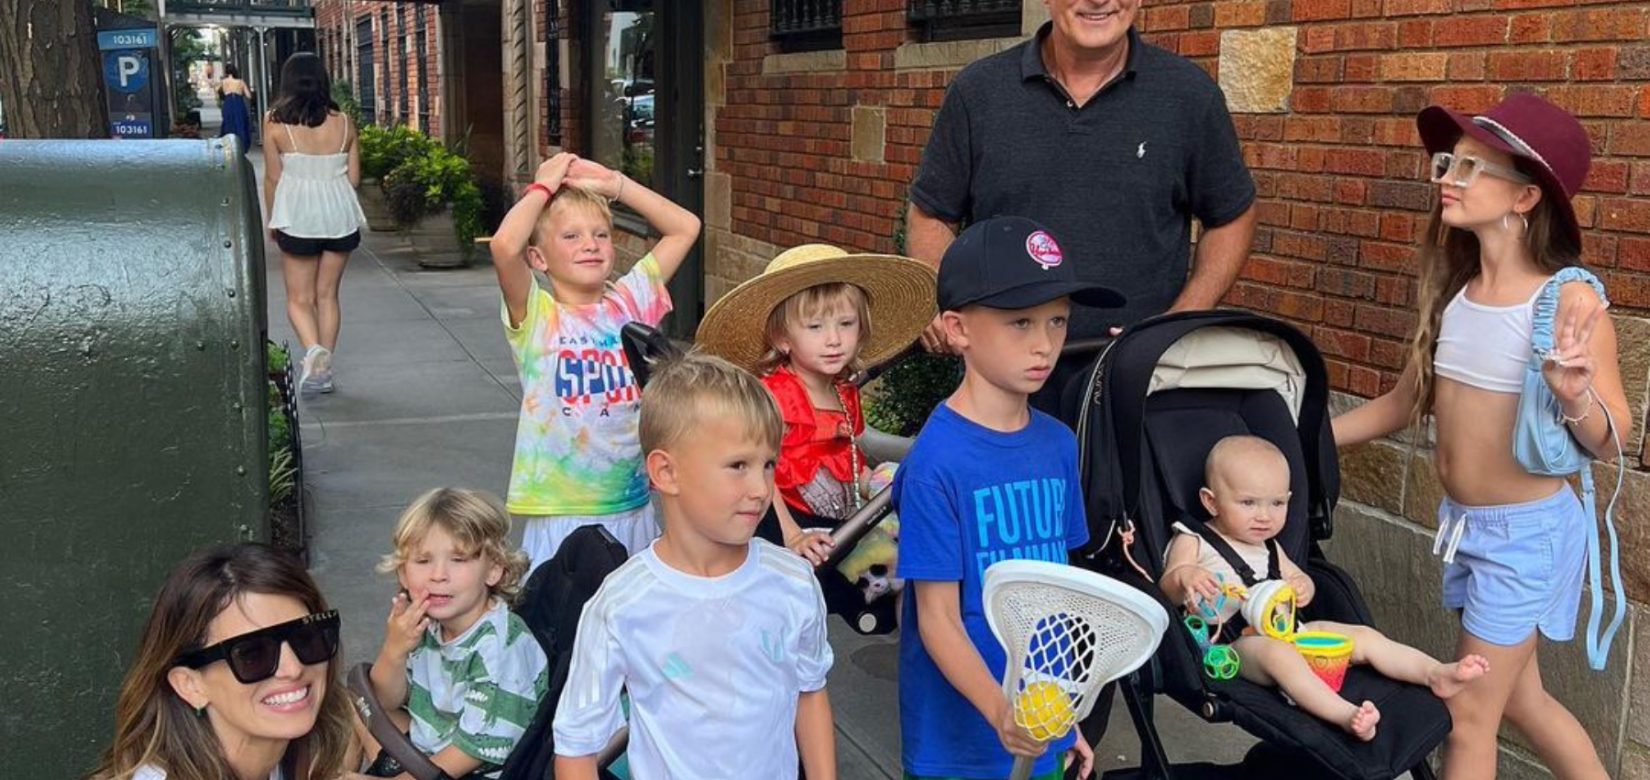 Άλεκ Μπάλντουιν: Σπάνια φωτογραφία με τη σύζυγό του και τα 7 παιδιά τους